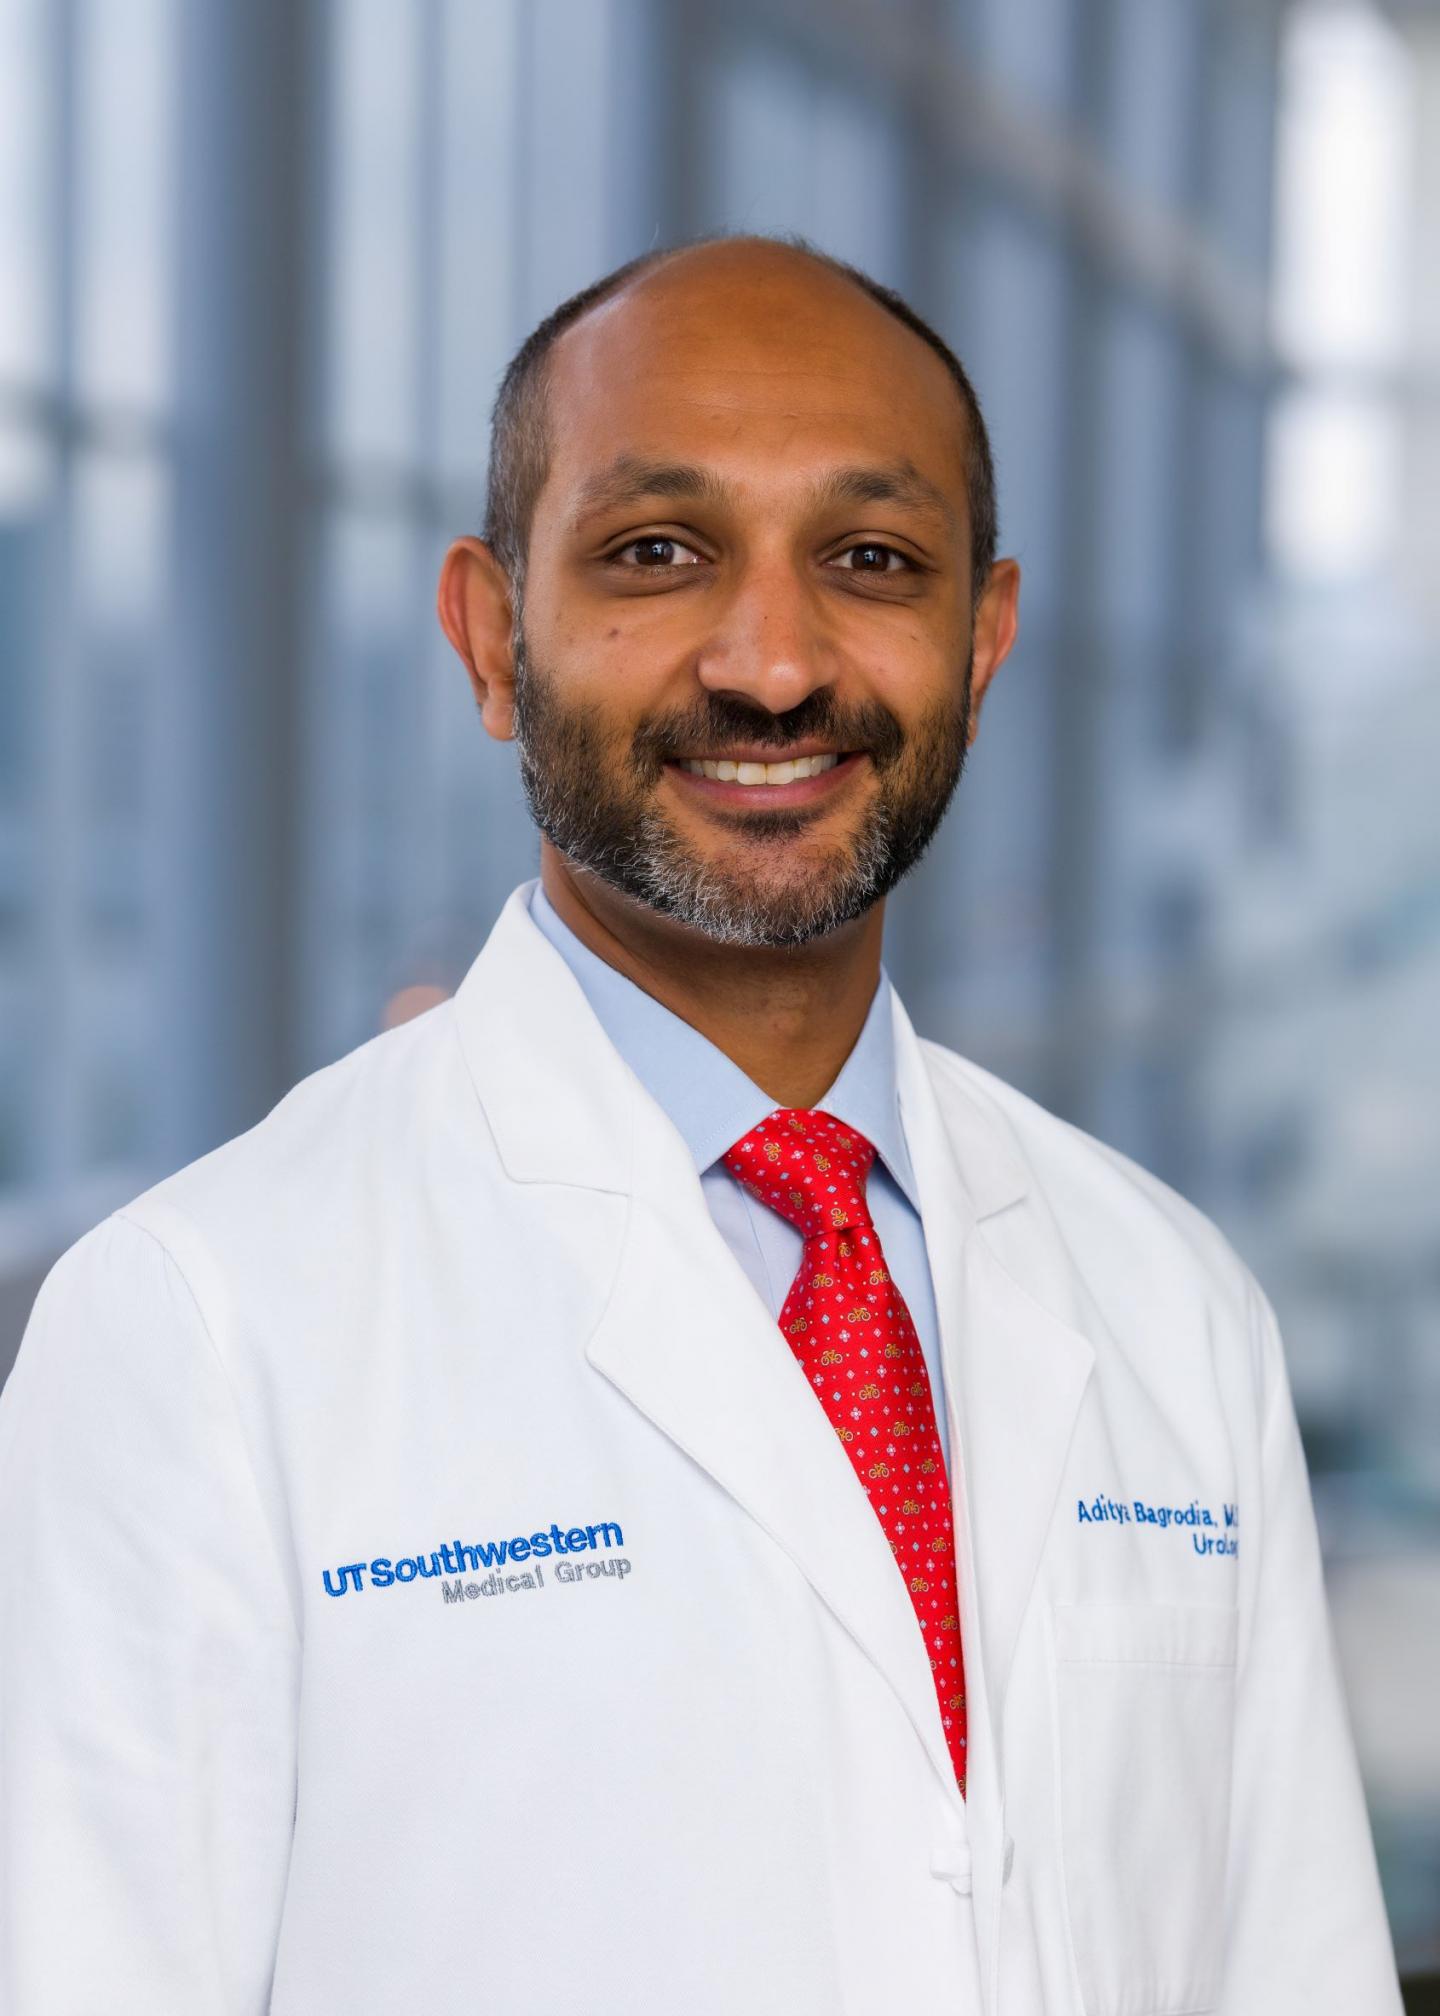 Aditya Bagrodia, M.D., UT Southwestern Medical Center